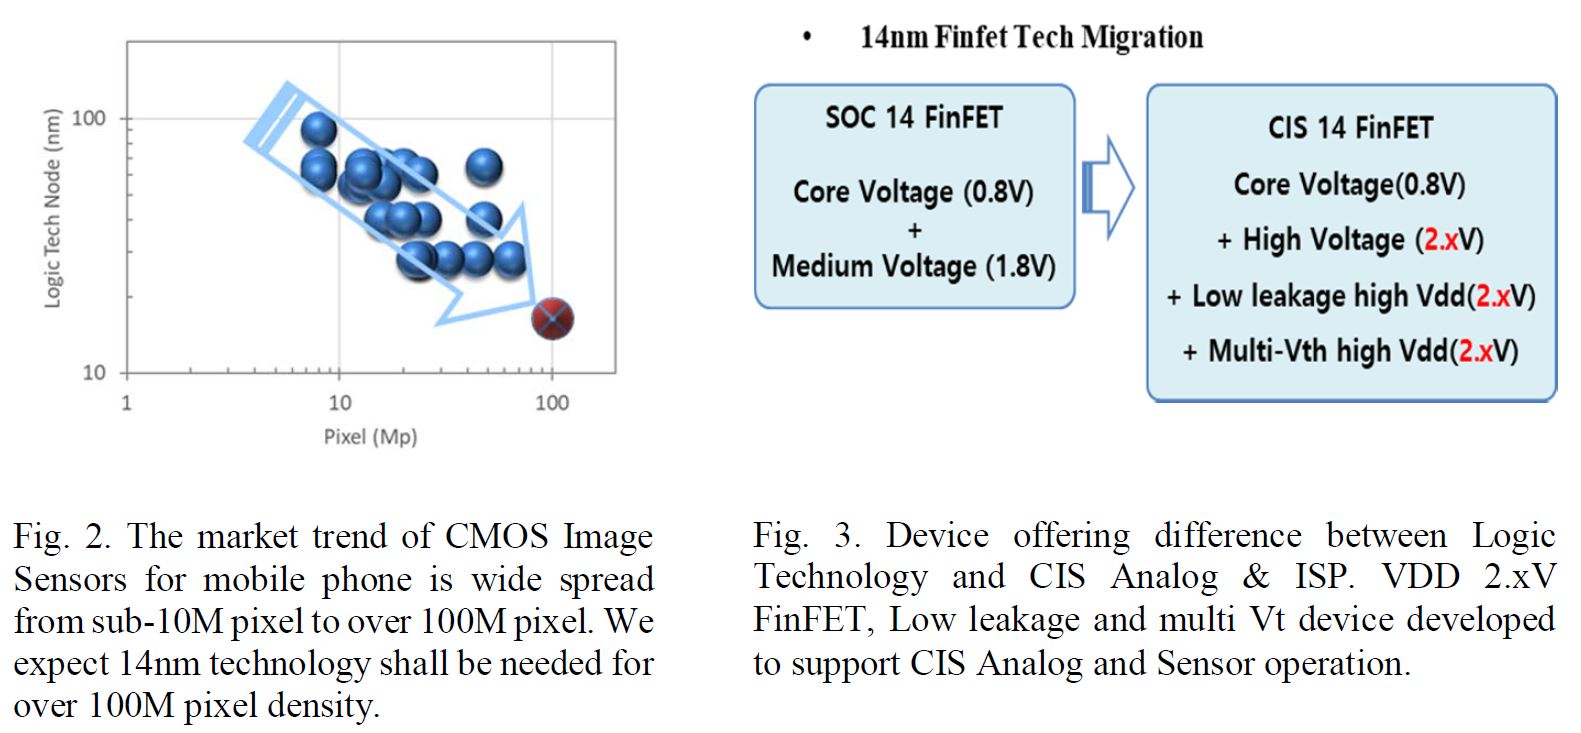 Samsung trình làng
công nghệ FinFET 14nm cho cảm biến camera 144MP trên
smartphone